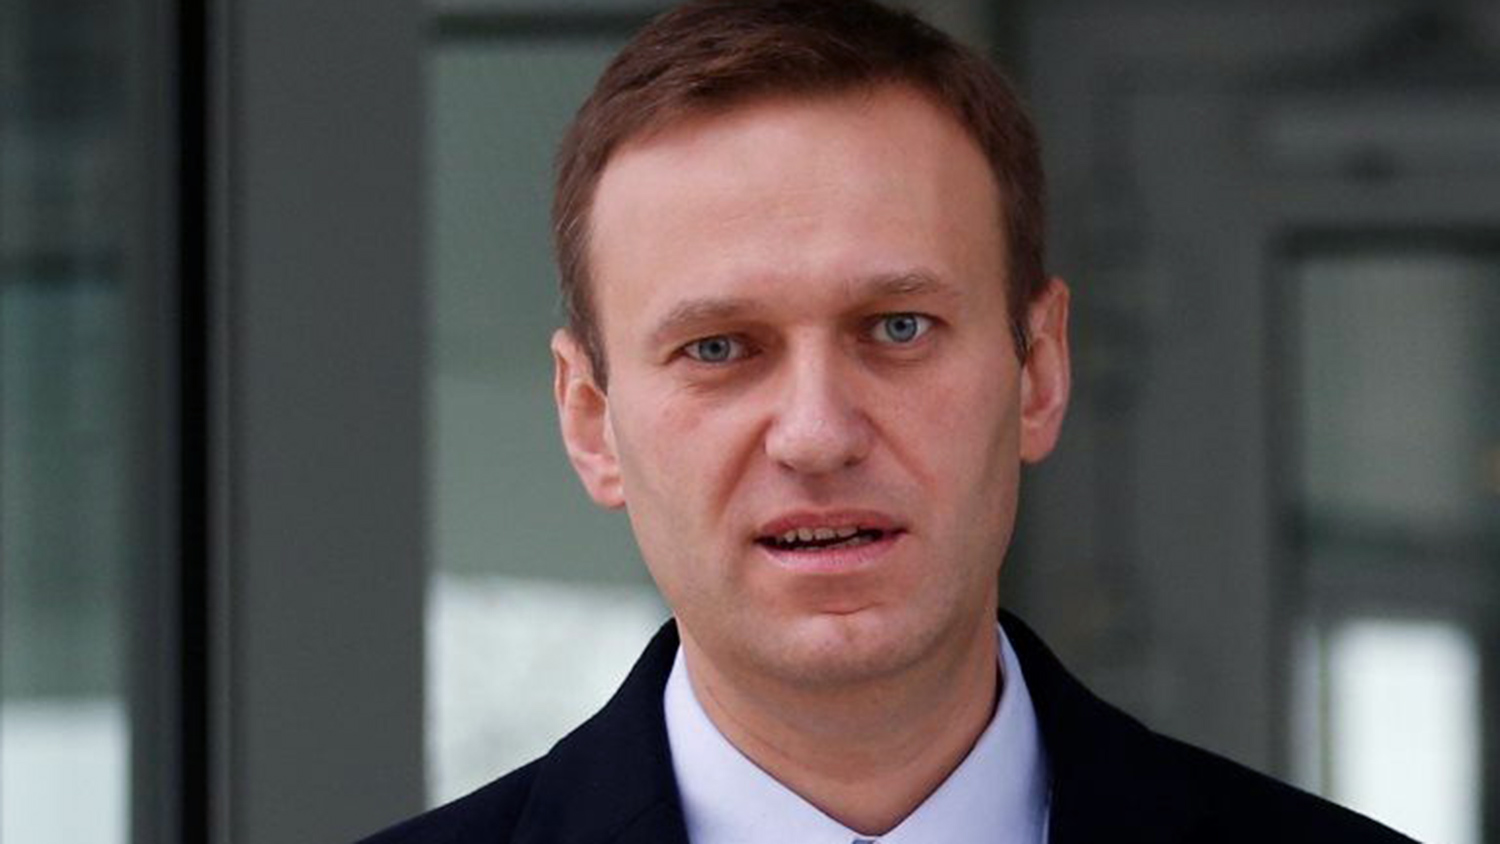 Nemcy Obvinili Navalnogo V Zloupotreblenii Gostepriimstvom Gazeta Ru Novosti